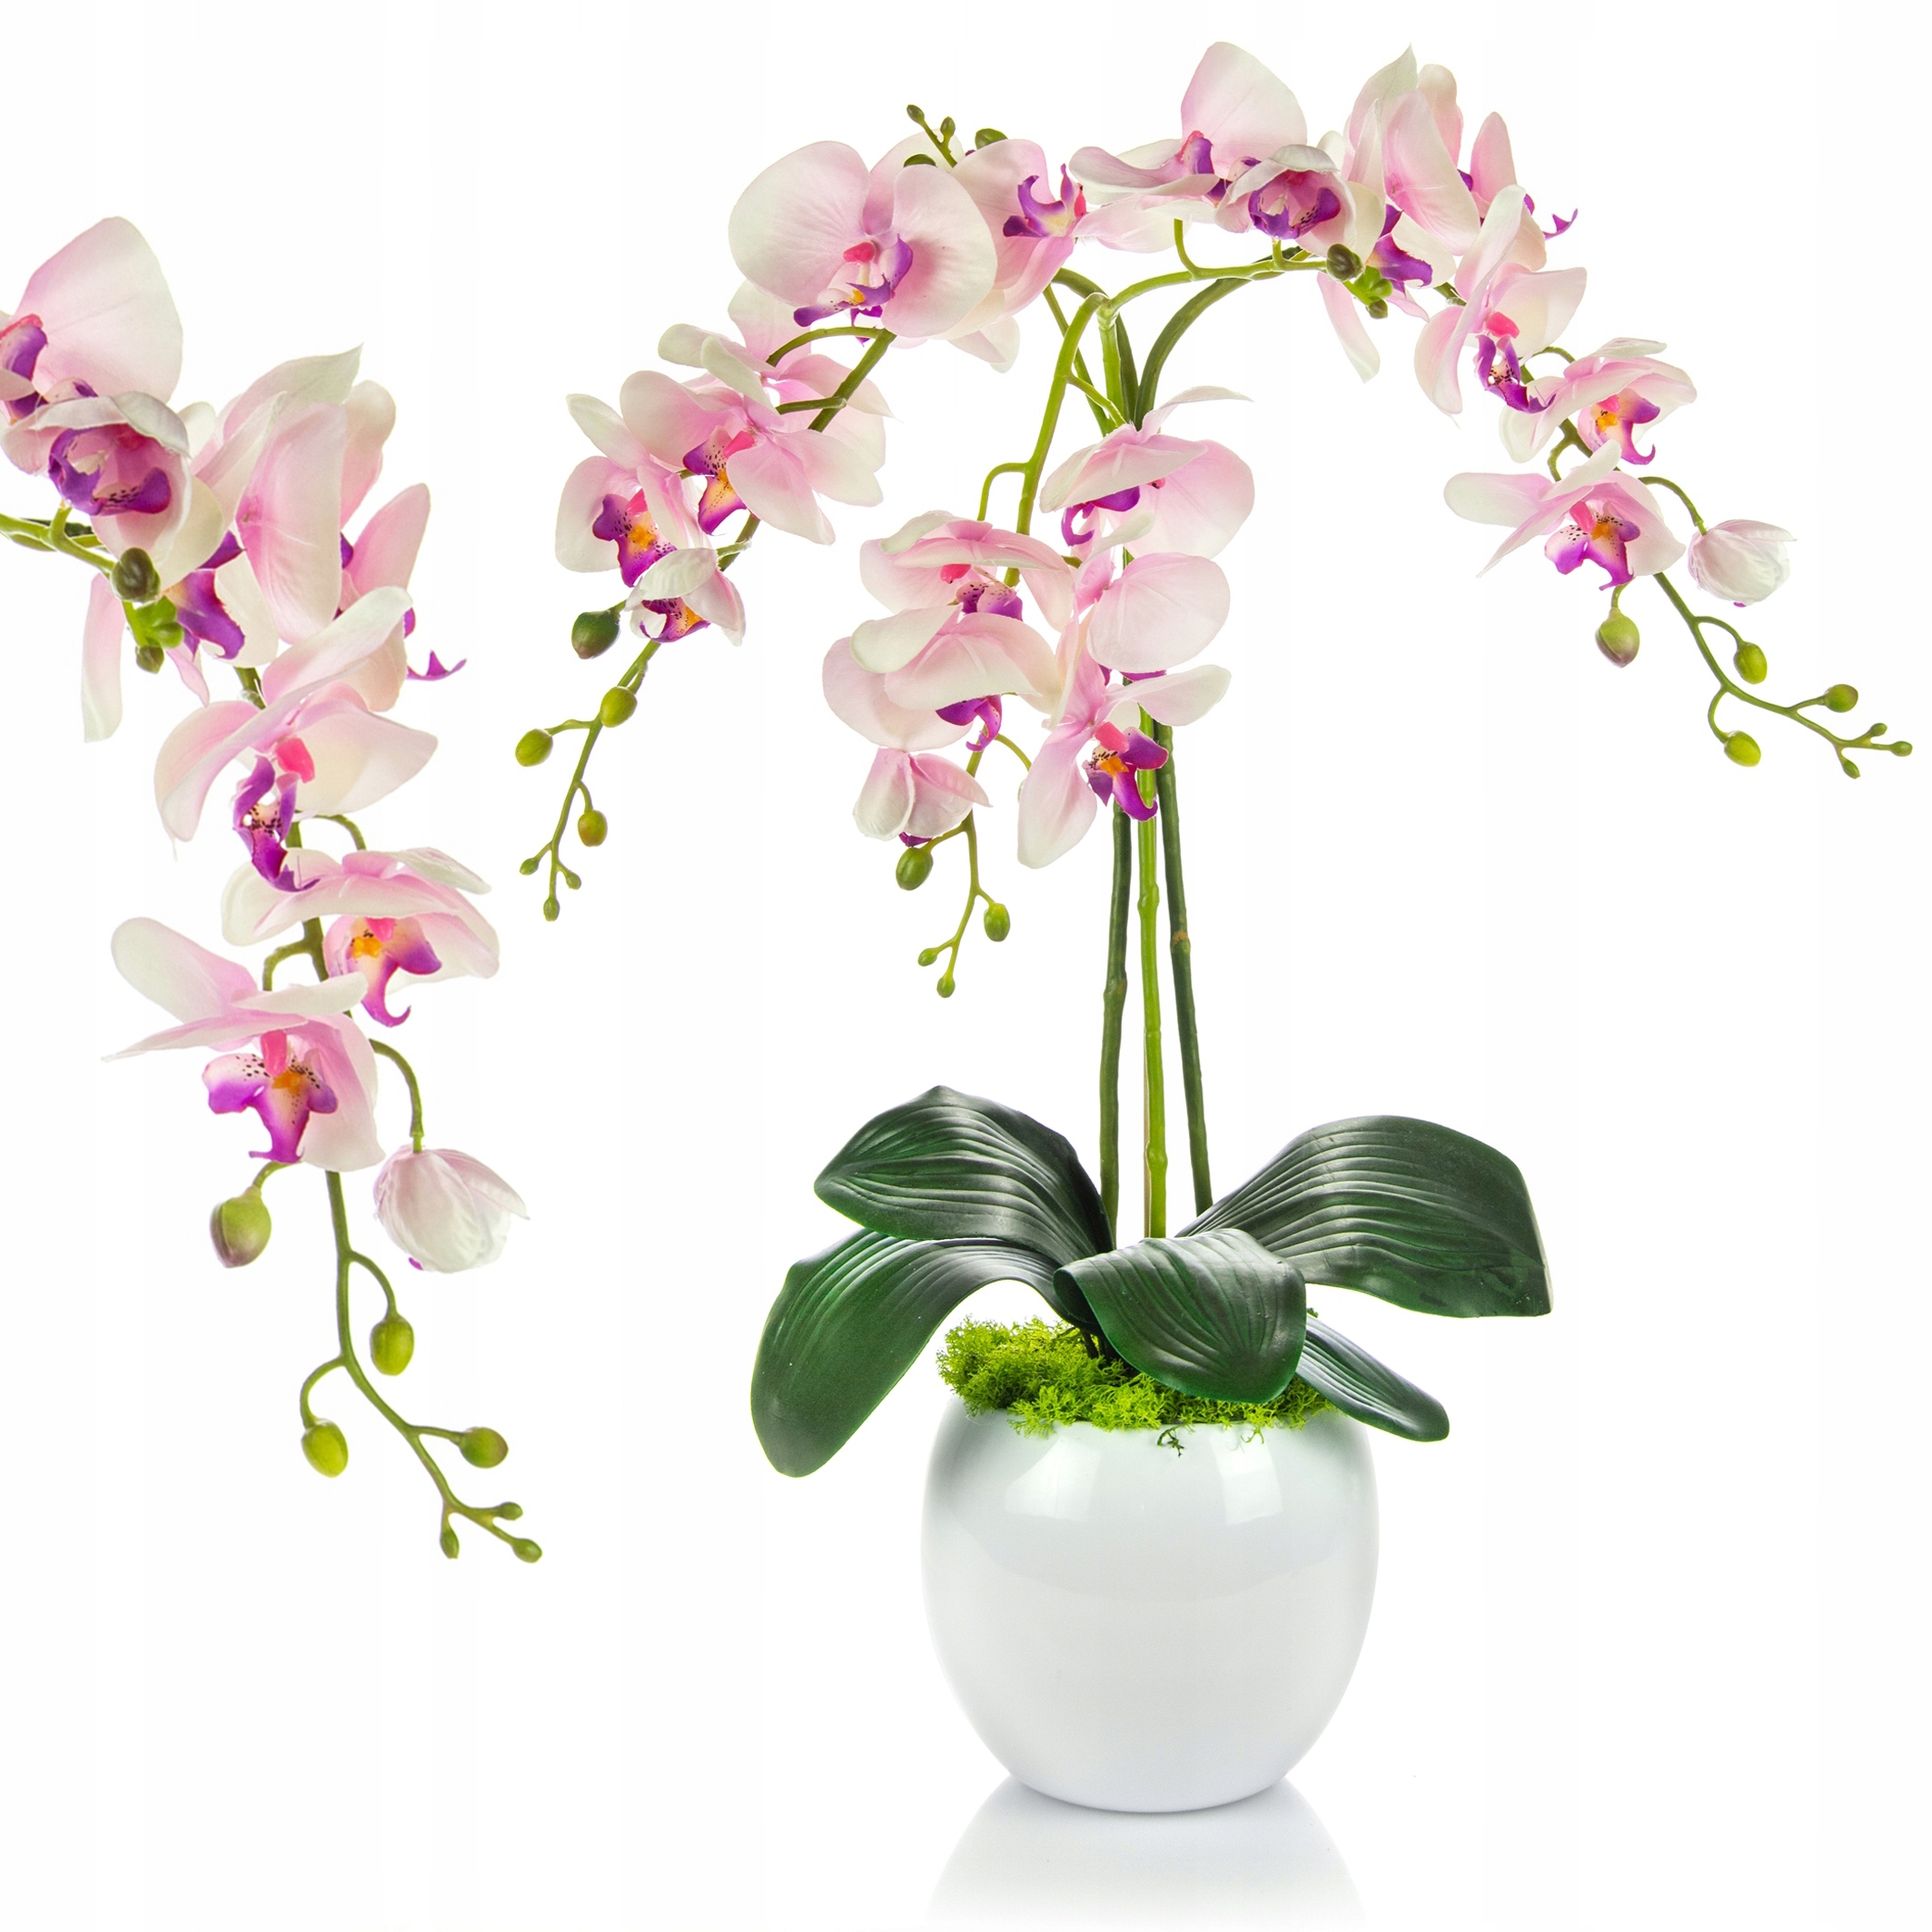 Купить орхидею в сочи